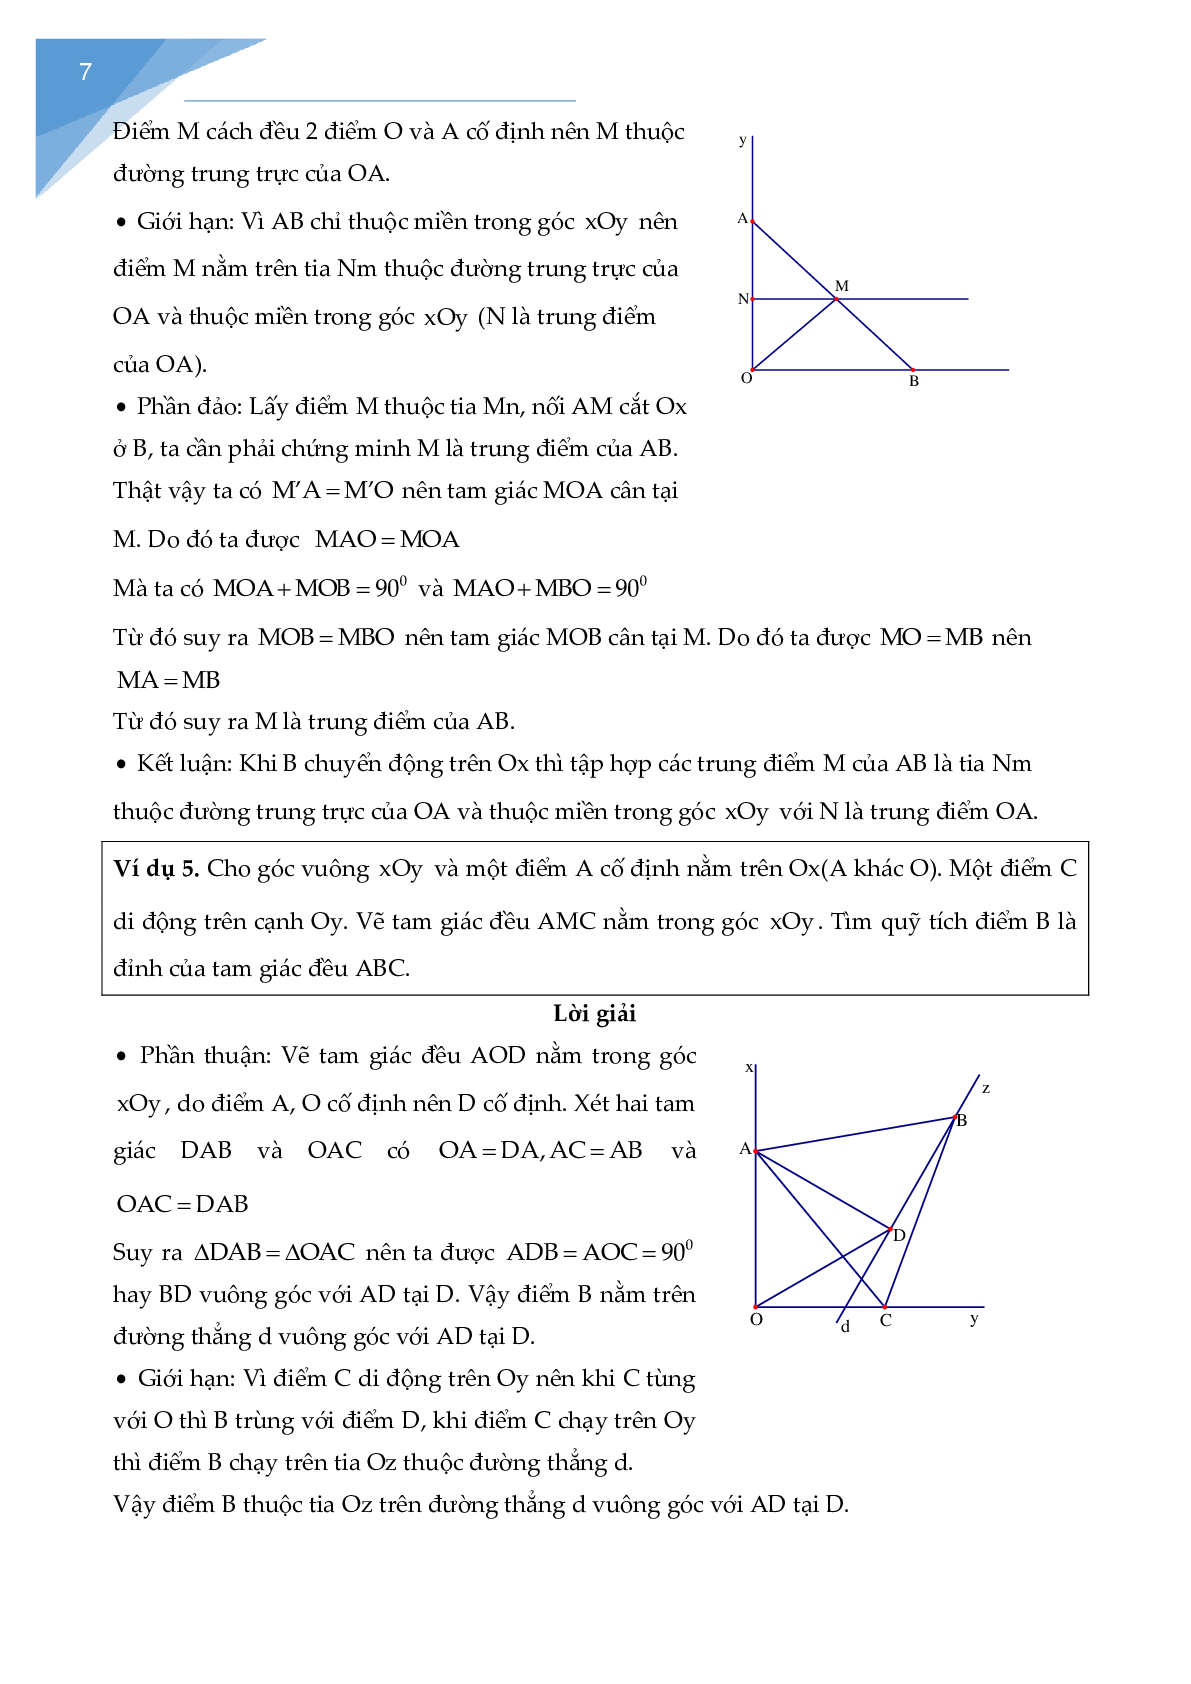 Chuyên đề các bài toán quỹ tích - tập hợp điểm (trang 8)